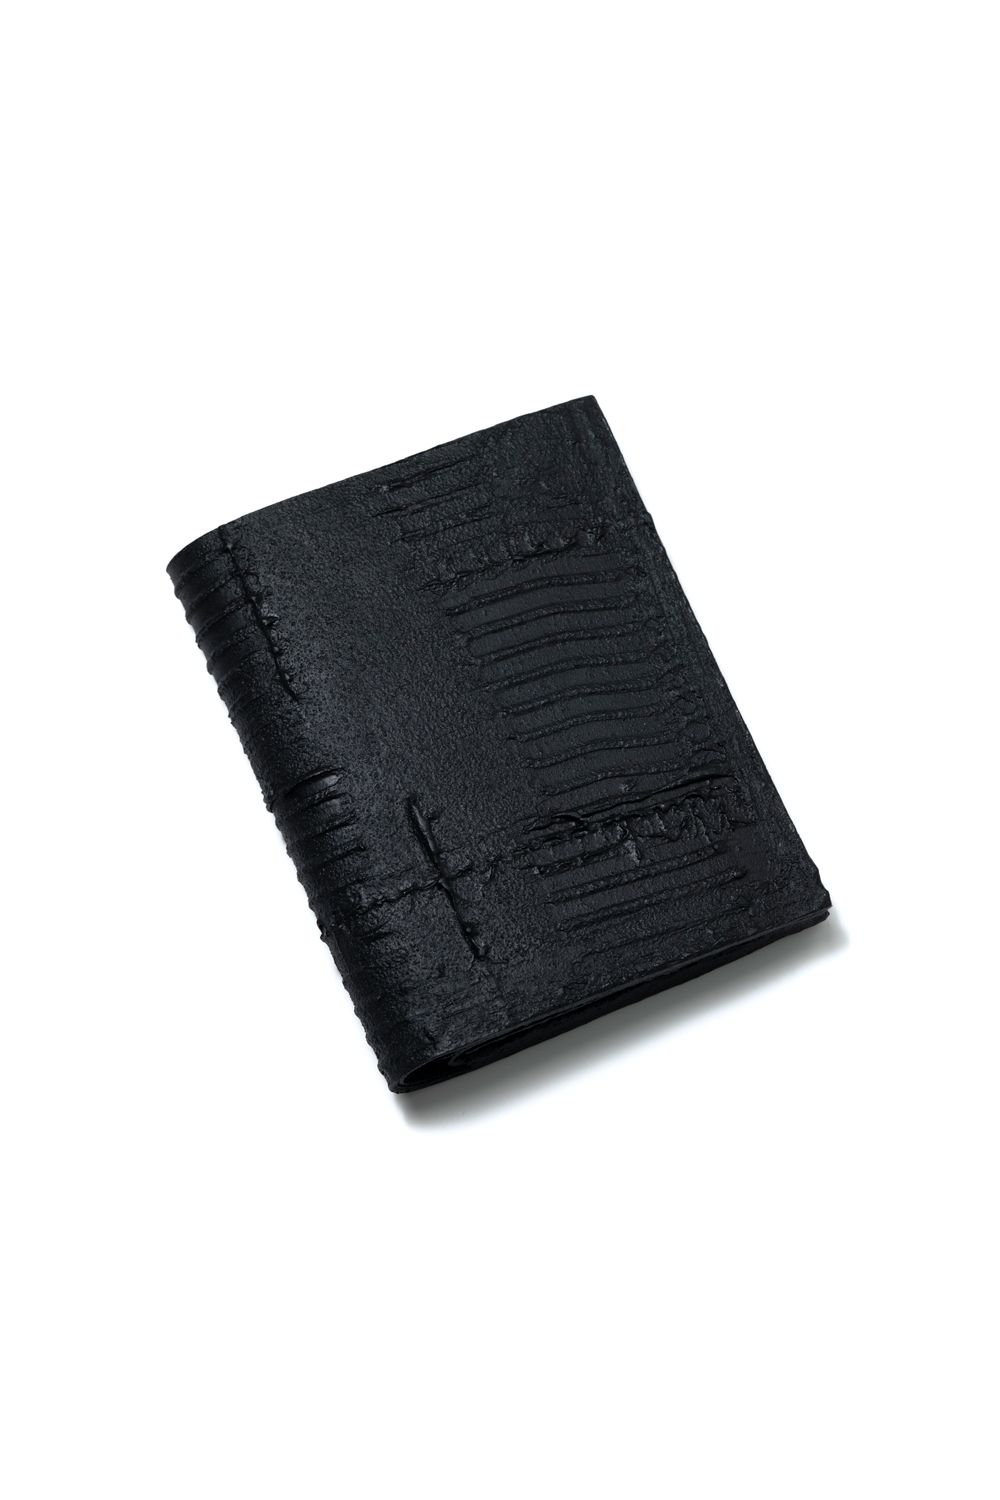 KAGARI YUSUKE - 【お取り寄せ可能】二つ折り財布 [黒い壁 